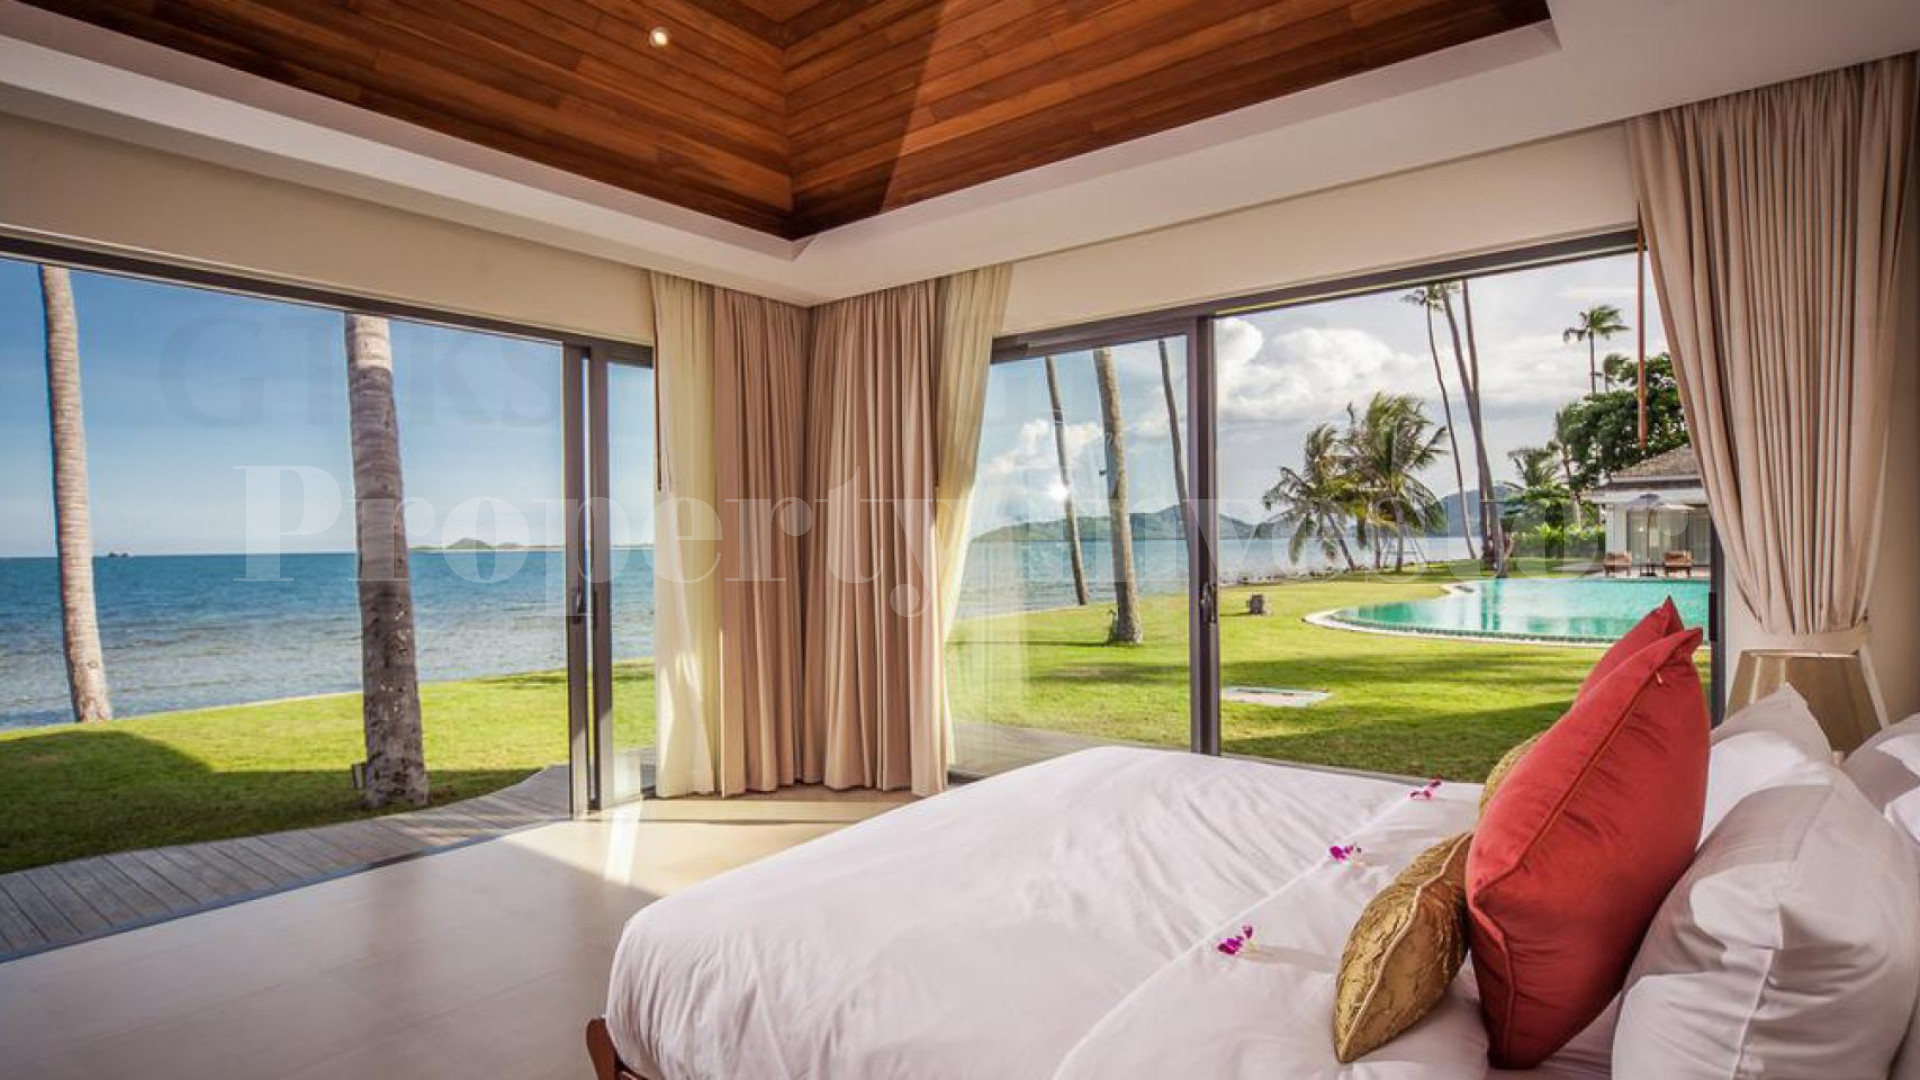 Прекрасная современная вилла на 4 спальни на пляже со своим приватным выходом к пляжу на о. Самуи, Тайланд